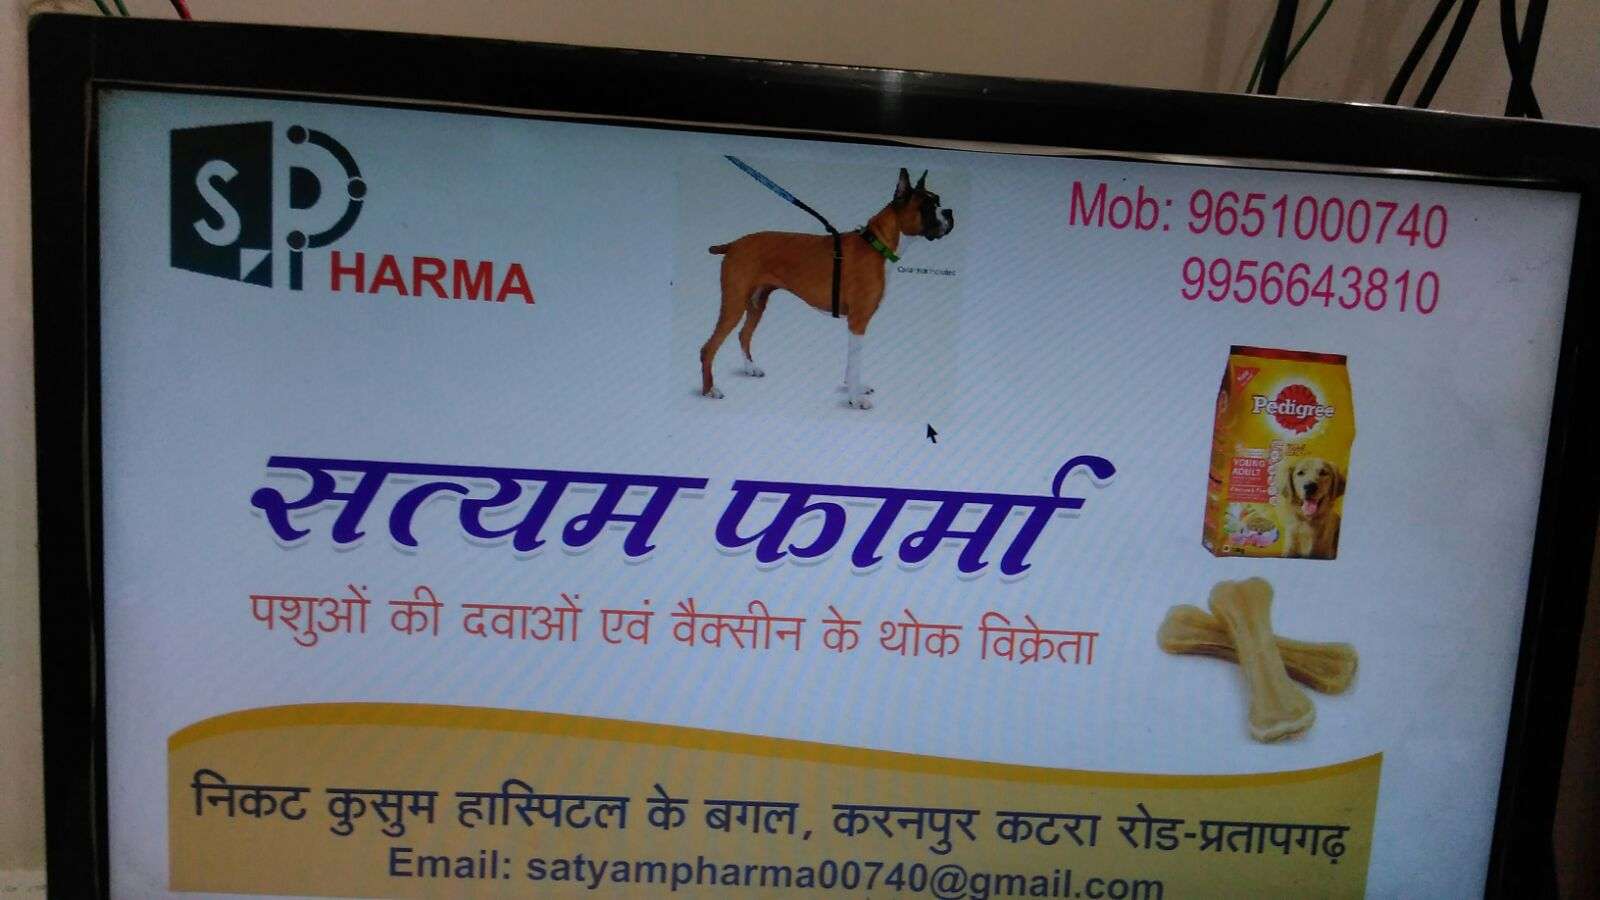 Satyam Pharma